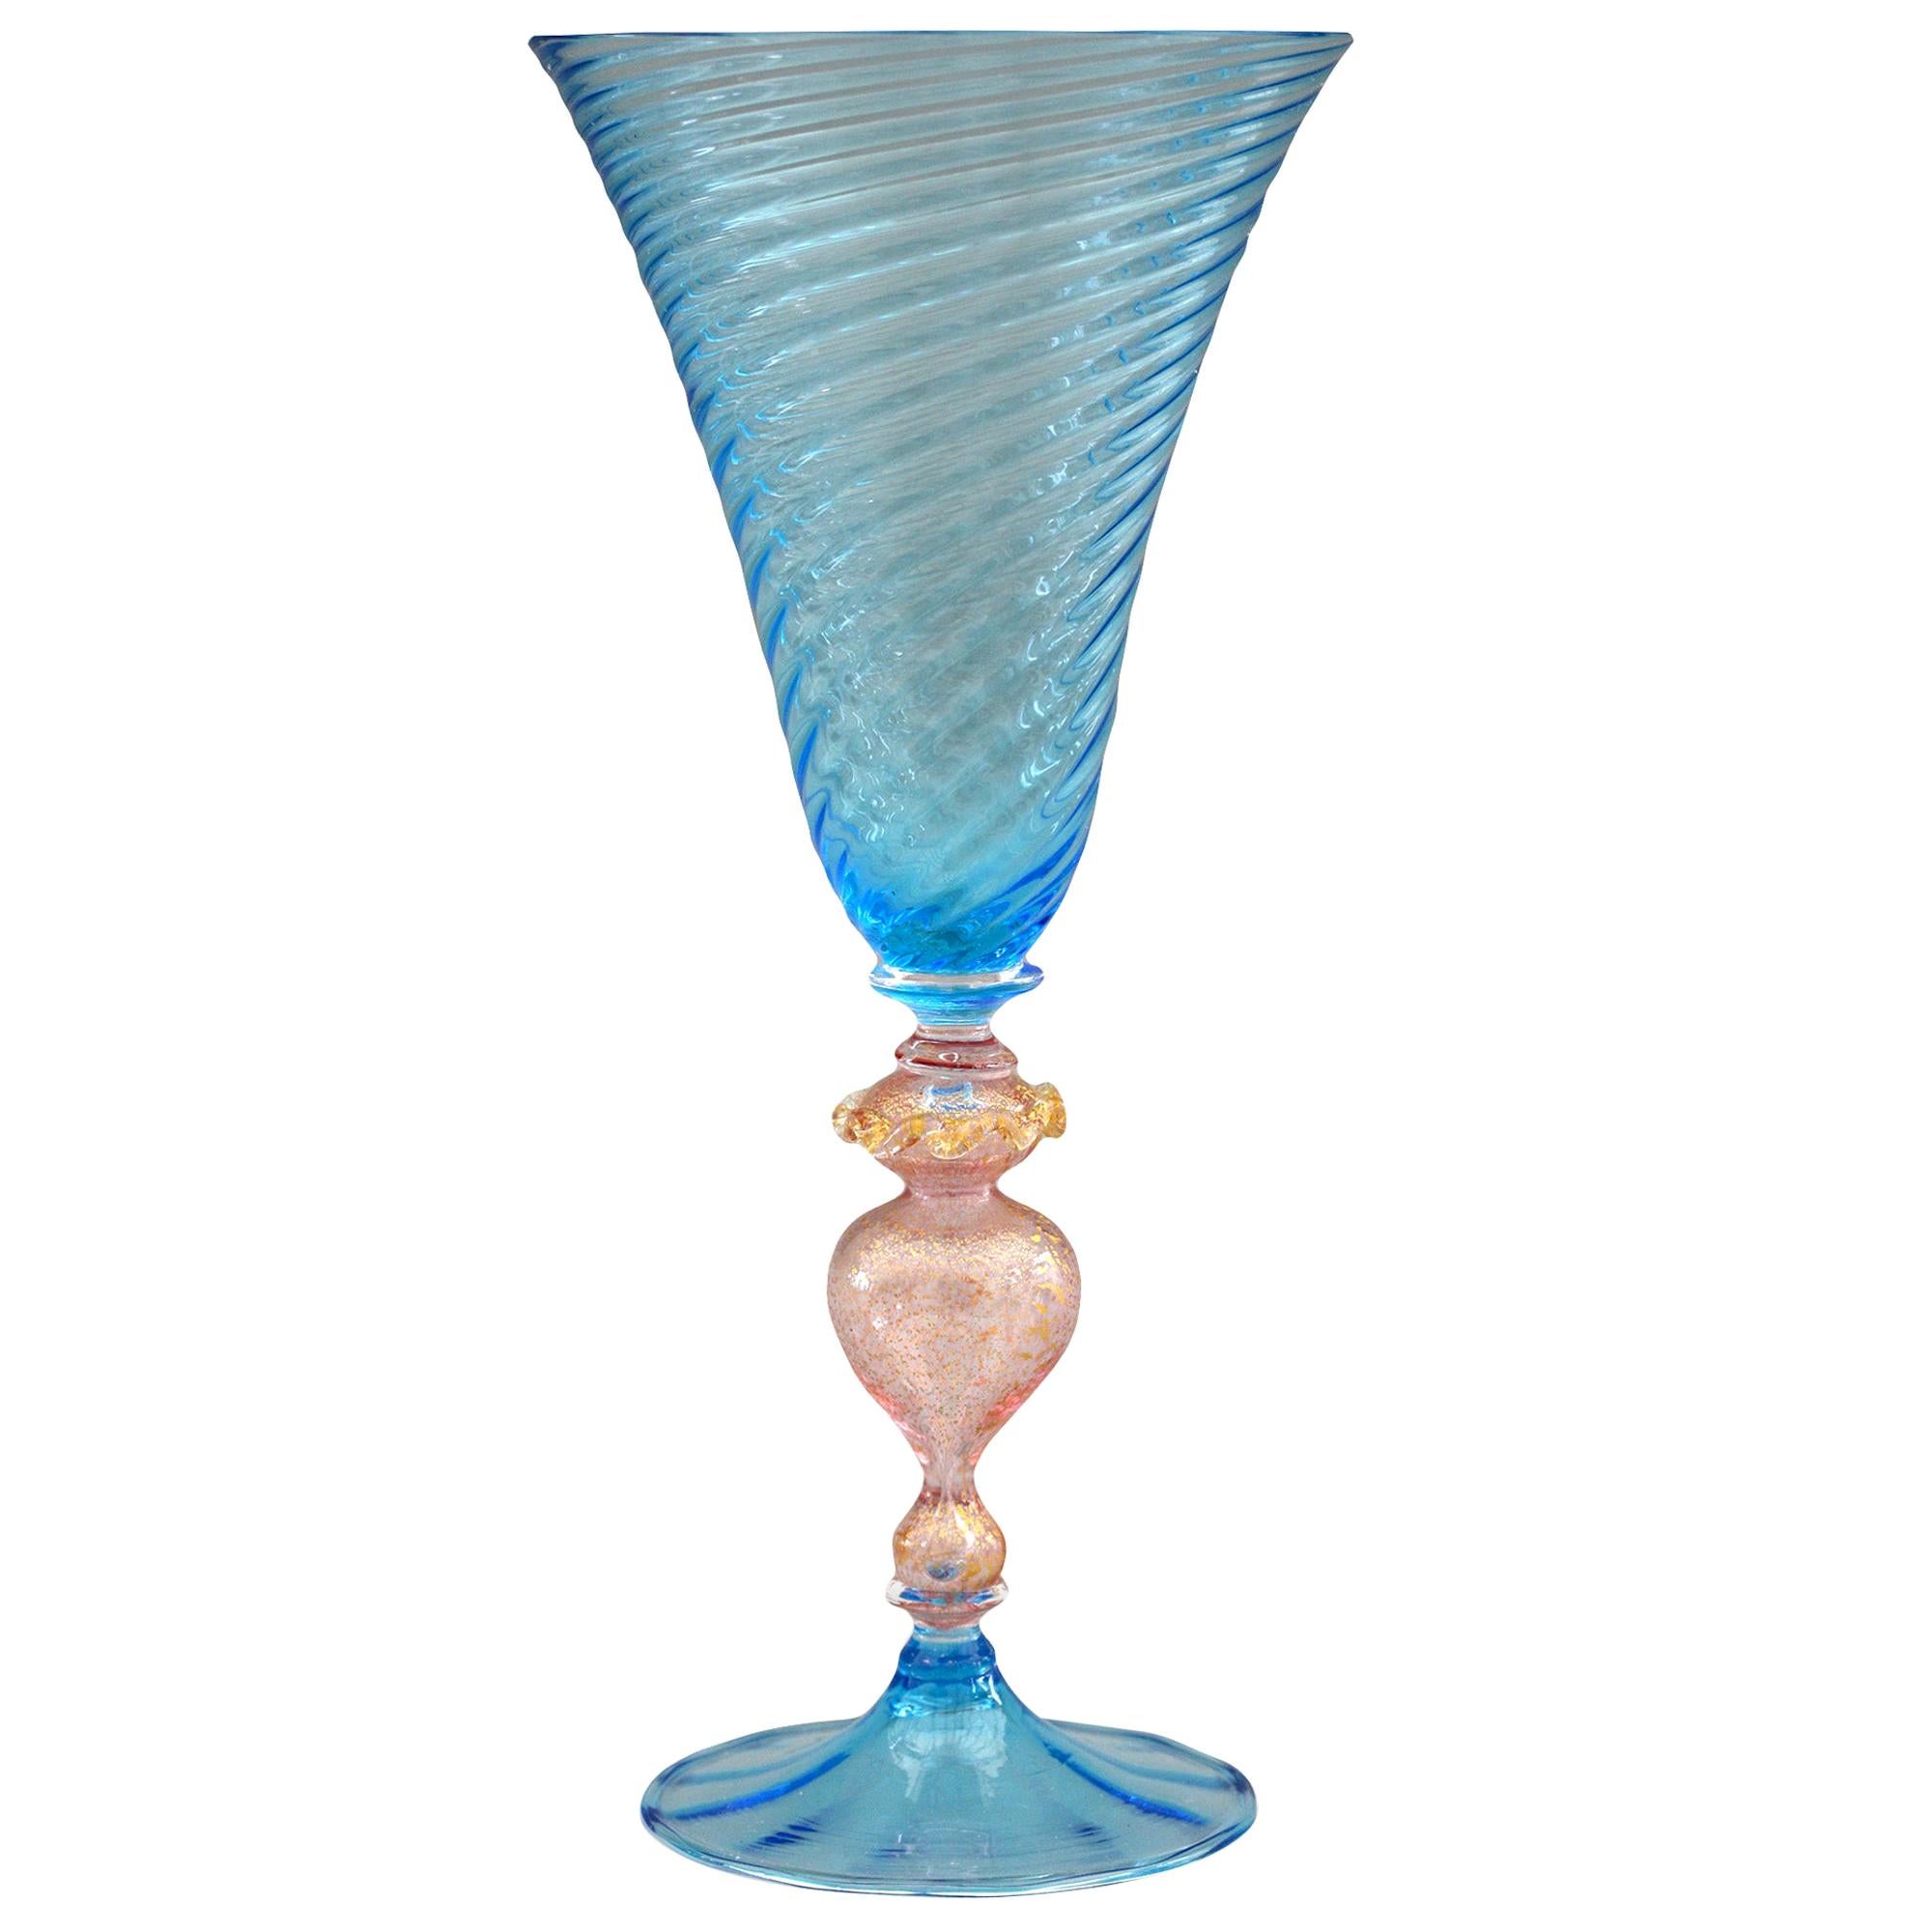 https://a.1stdibscdn.com/venetian-revival-murano-blue-trailed-wine-glass-for-sale/1121189/f_203500521598604642793/20350052_master.jpg